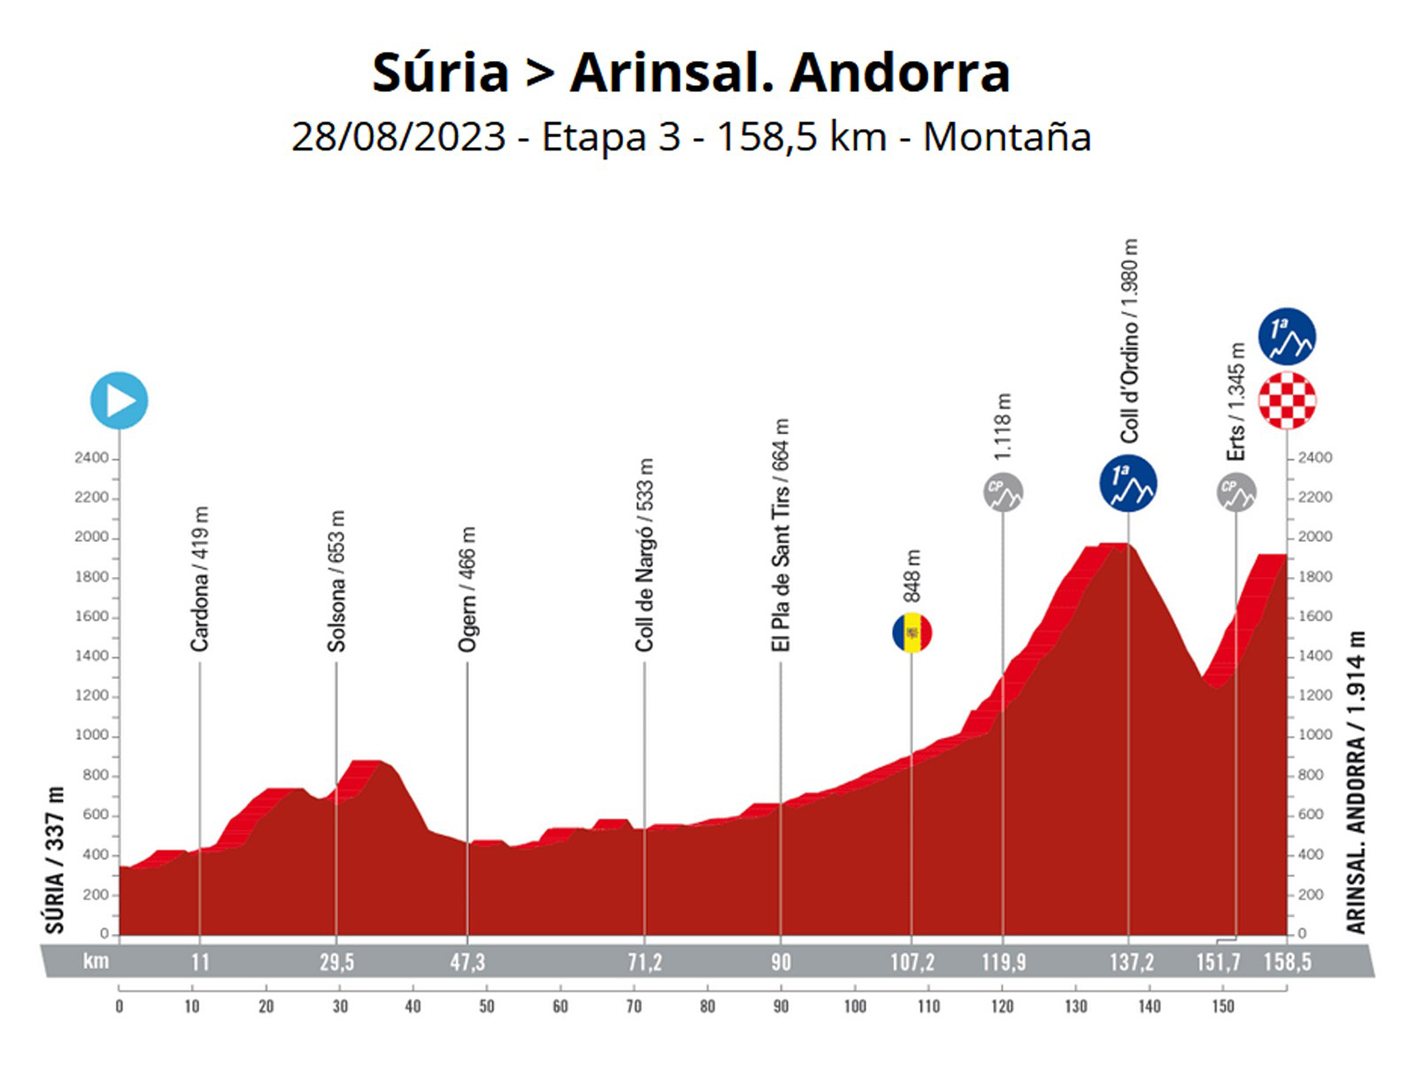 Súria acollirà l'inici de la tercera etapa de la Vuelta Ciclista a Espanya el proper 28 d'agost